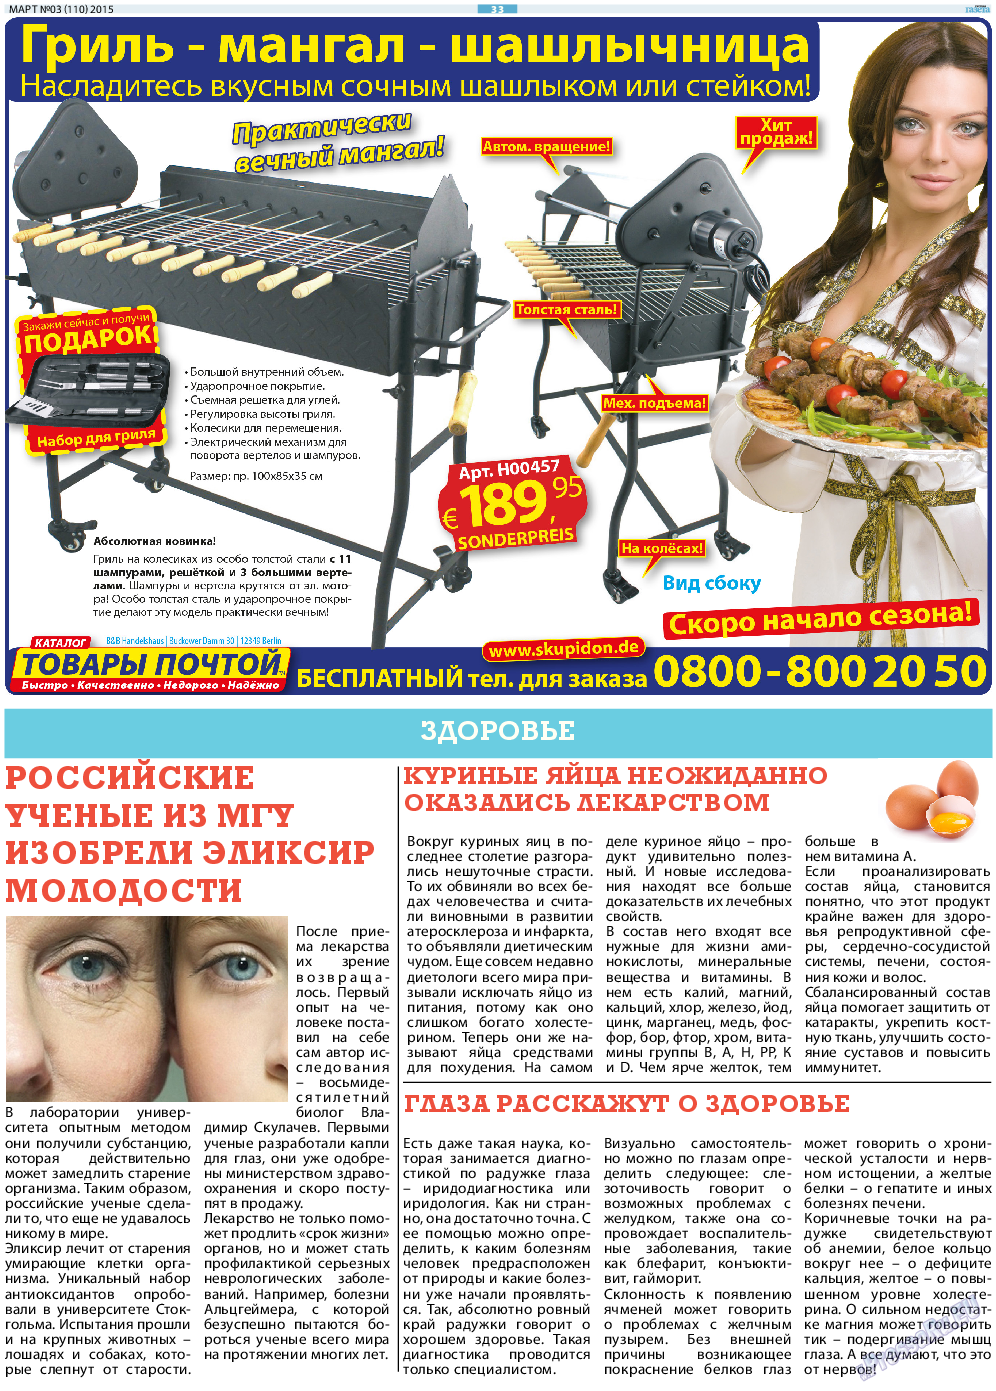 Русская Газета (газета). 2015 год, номер 3, стр. 33